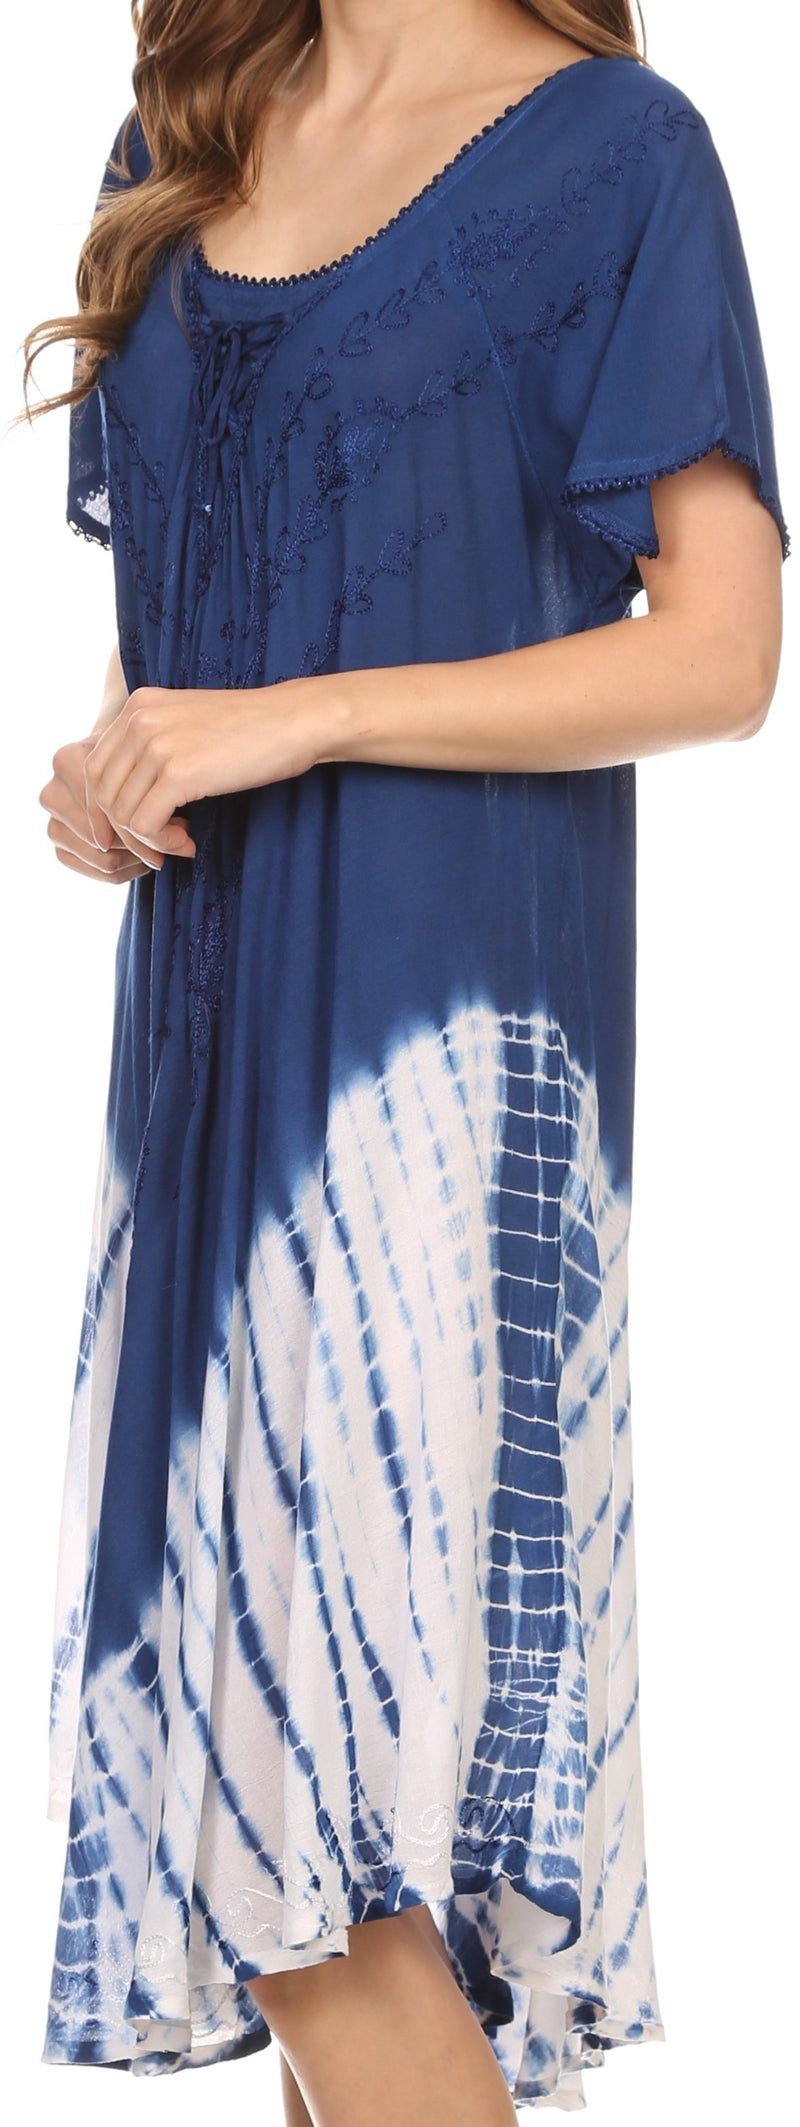 Sakkas Ballari Mid Length Cap Sleeve Embroidered Batik Caftan Dress / Cover Up